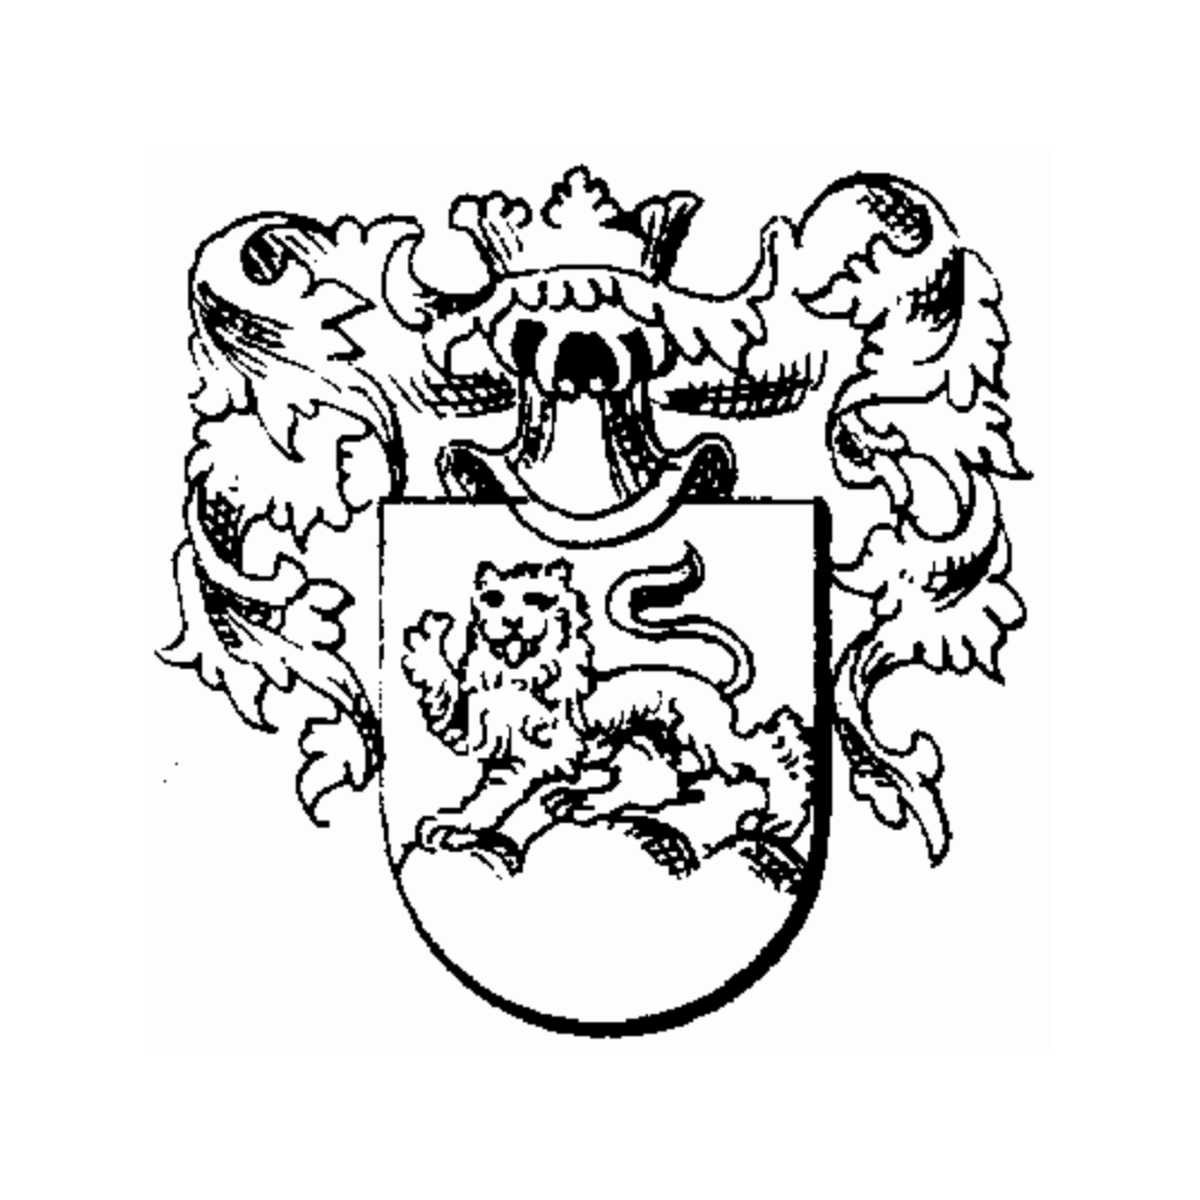 Coat of arms of family Süßtranck